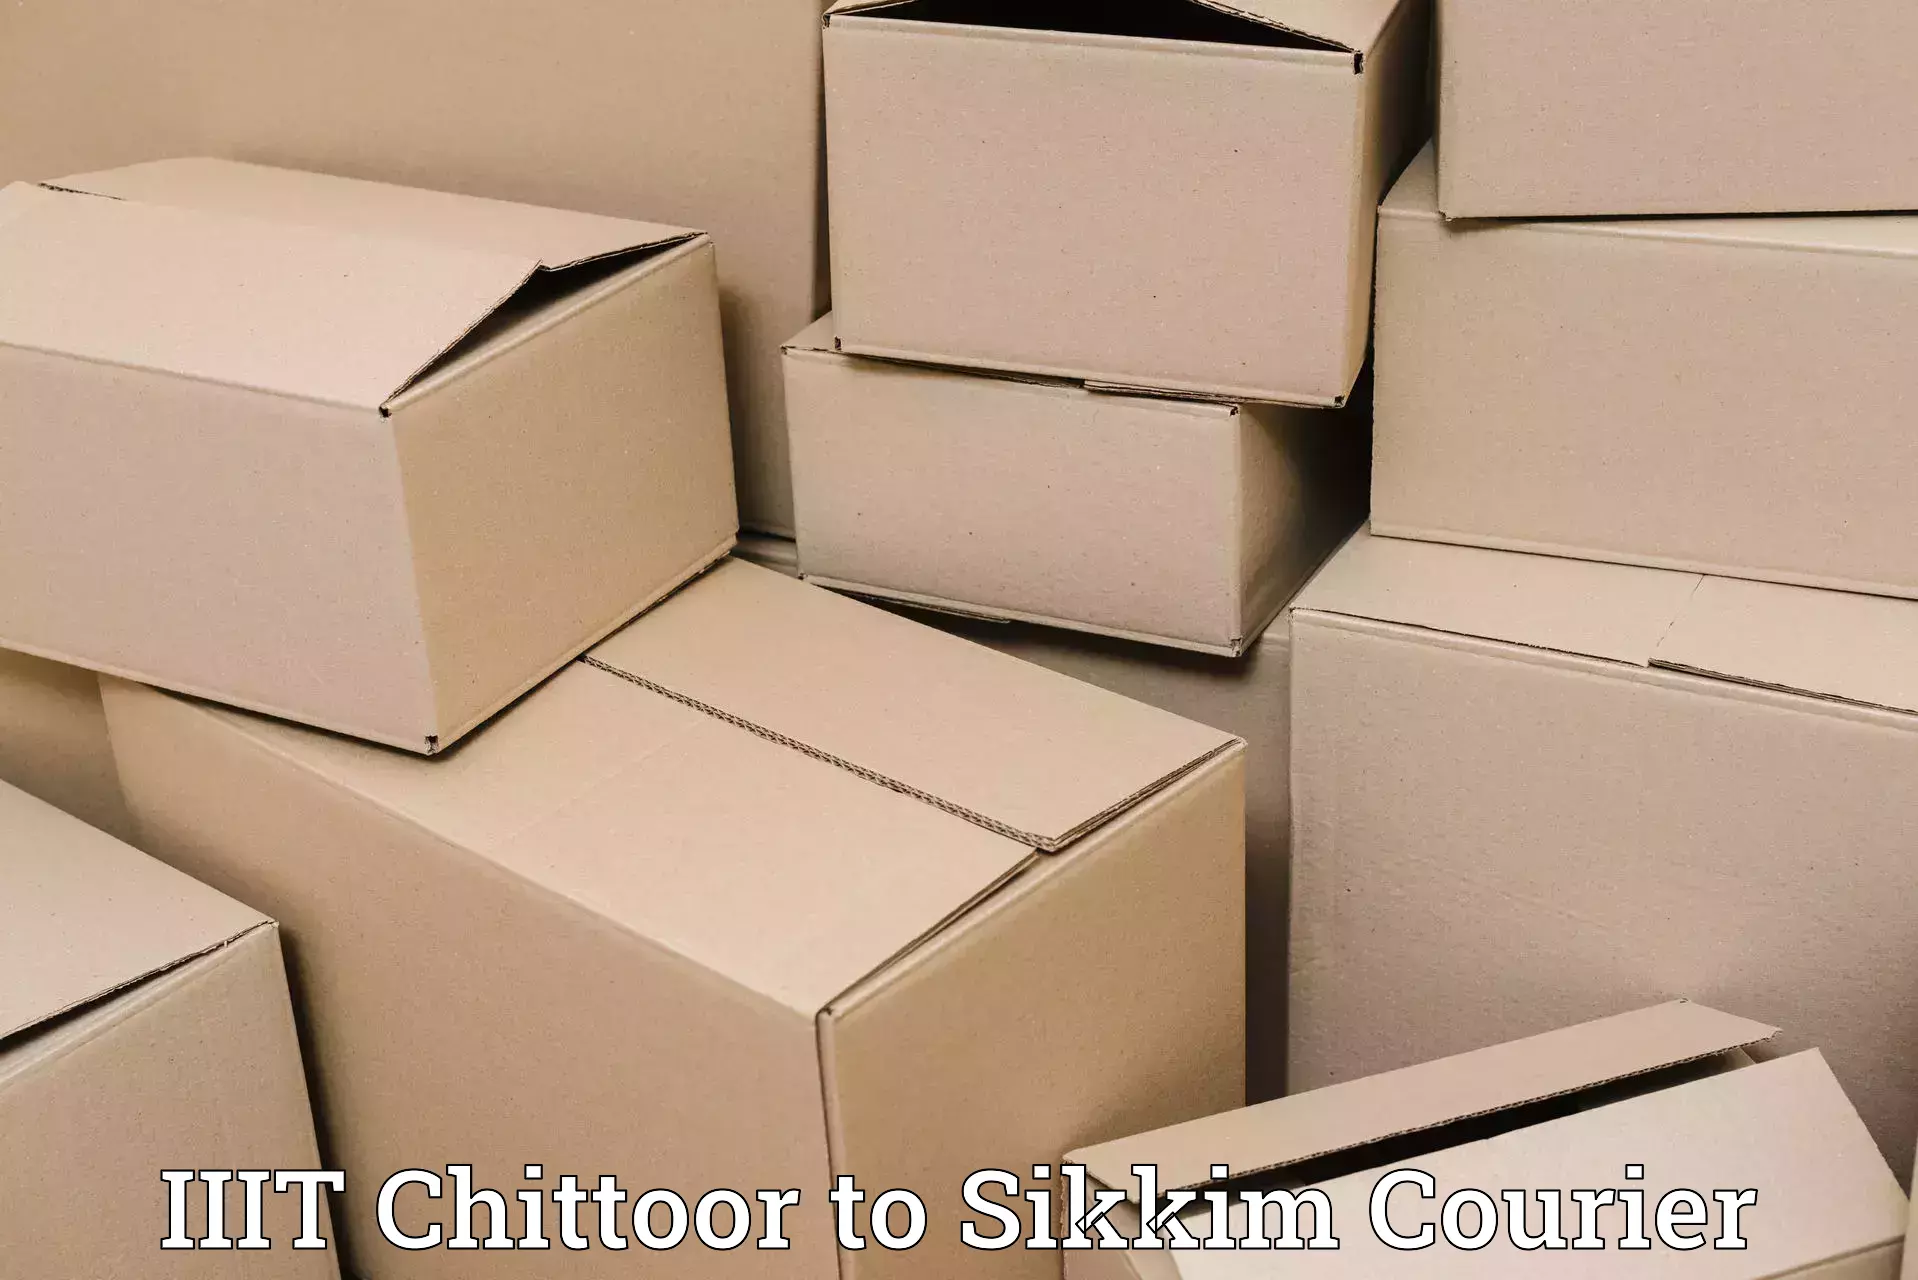 Secure packaging IIIT Chittoor to Pelling